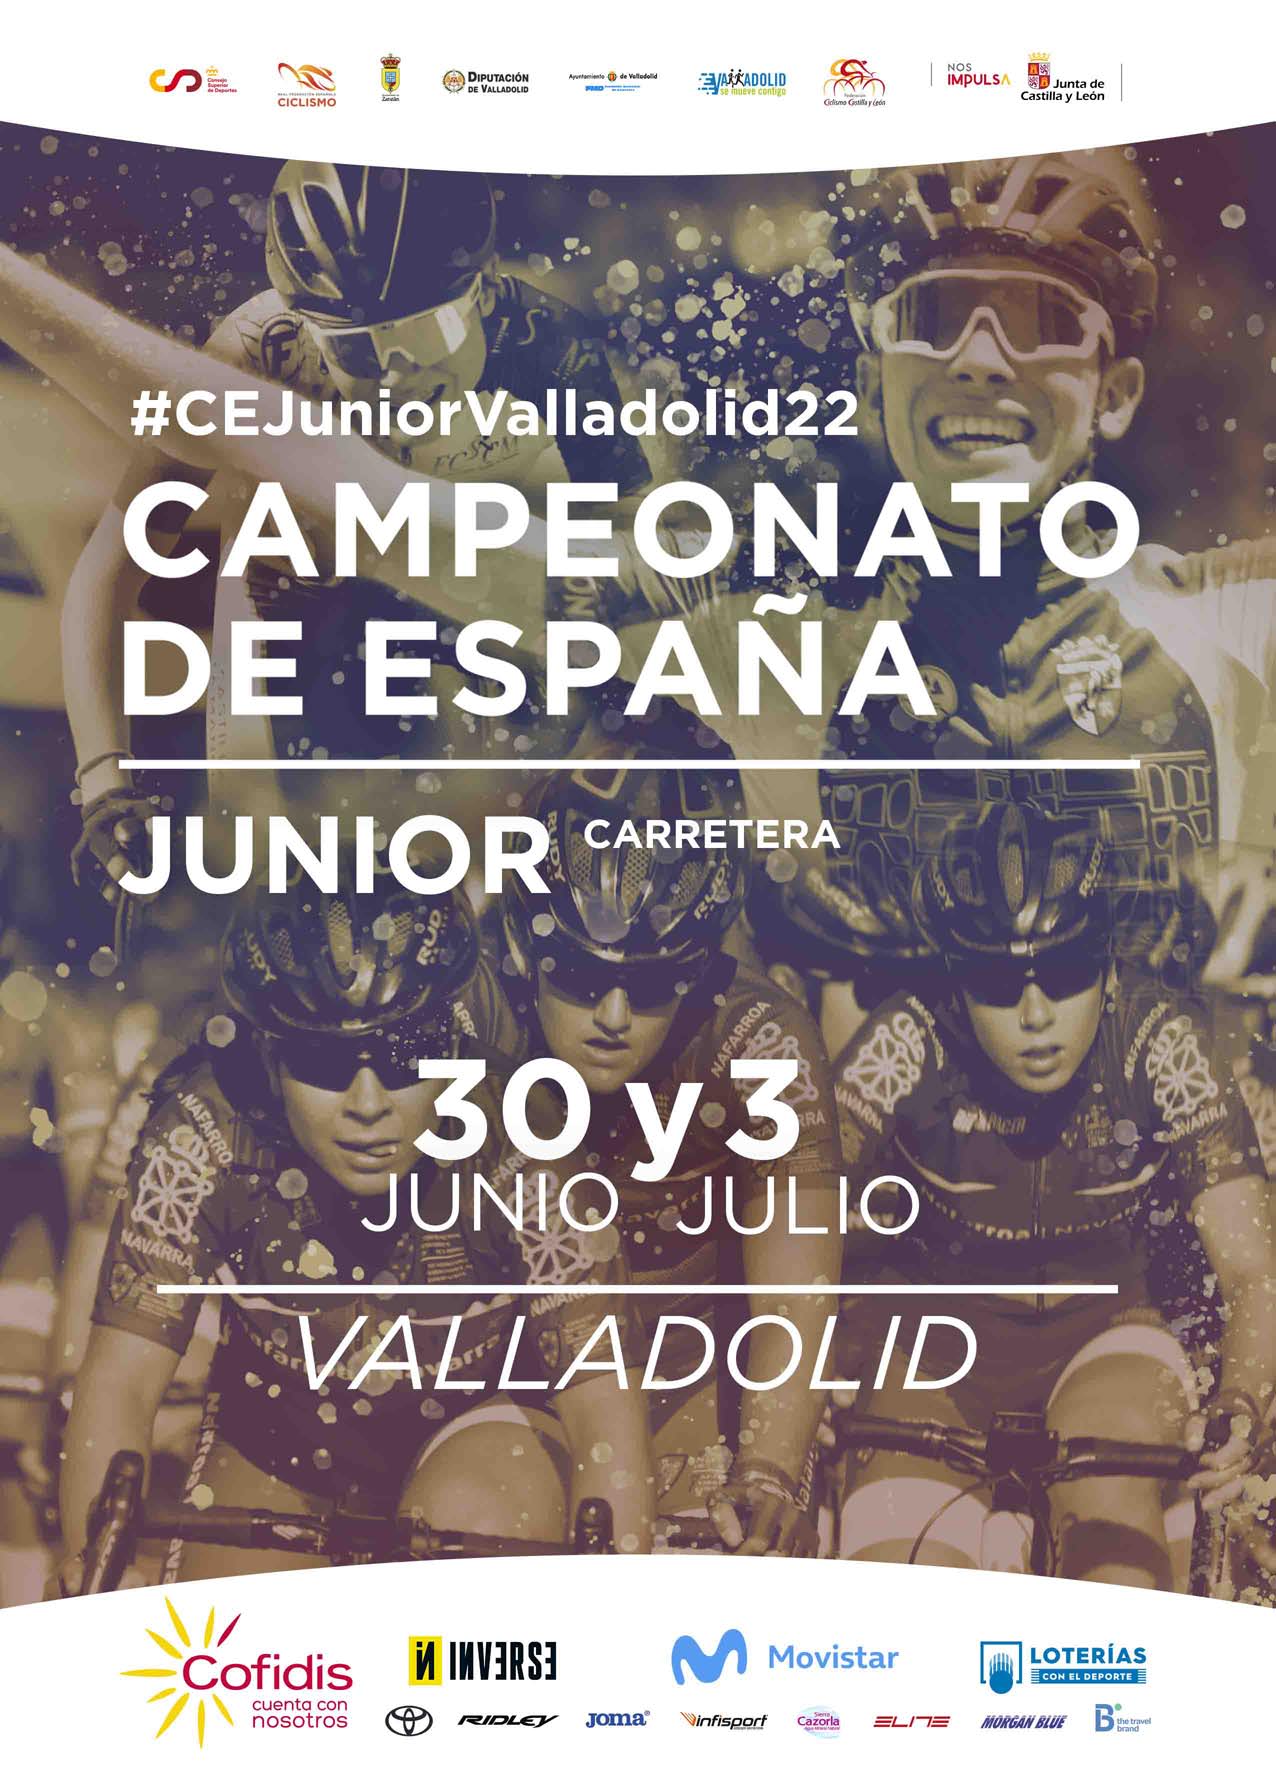 Valladolid alberga unos Campeonatos de España Escolares y juniors con la Comunidad de Madrid aspirando a todo